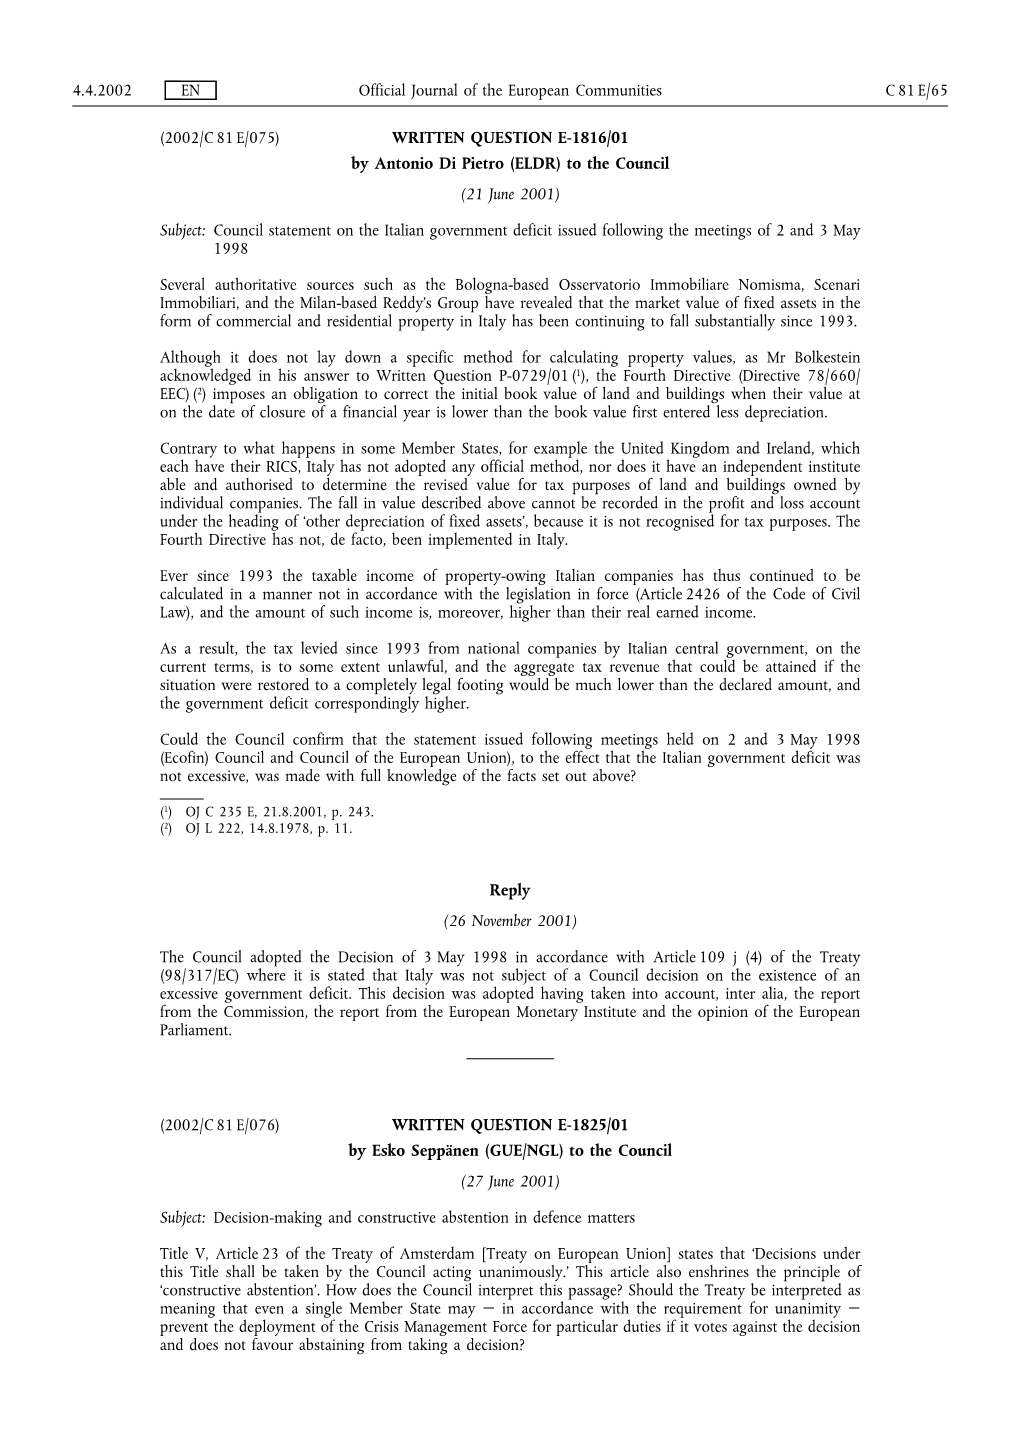 2002/C 81 E/075) WRITTEN QUESTION E-1816/01 by Antonio Di Pietro (ELDR) to the Council (21 June 2001